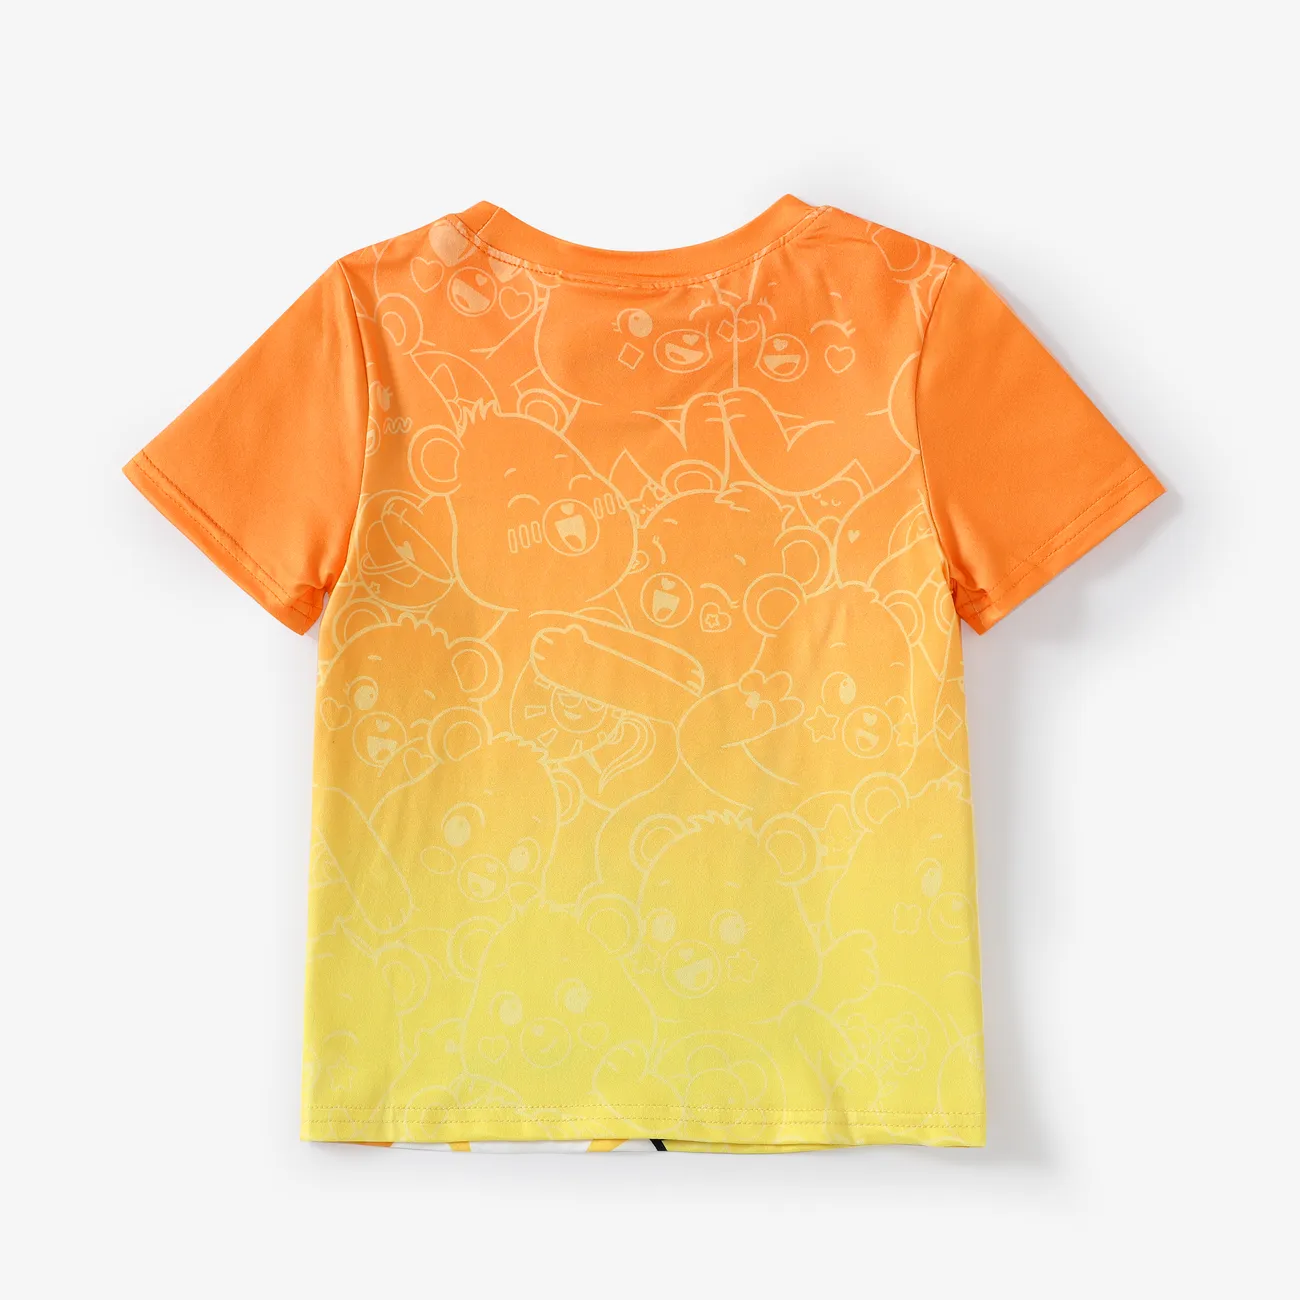 Gli Orsetti del Cuore Unisex Infantile Maglietta Arancione big image 1